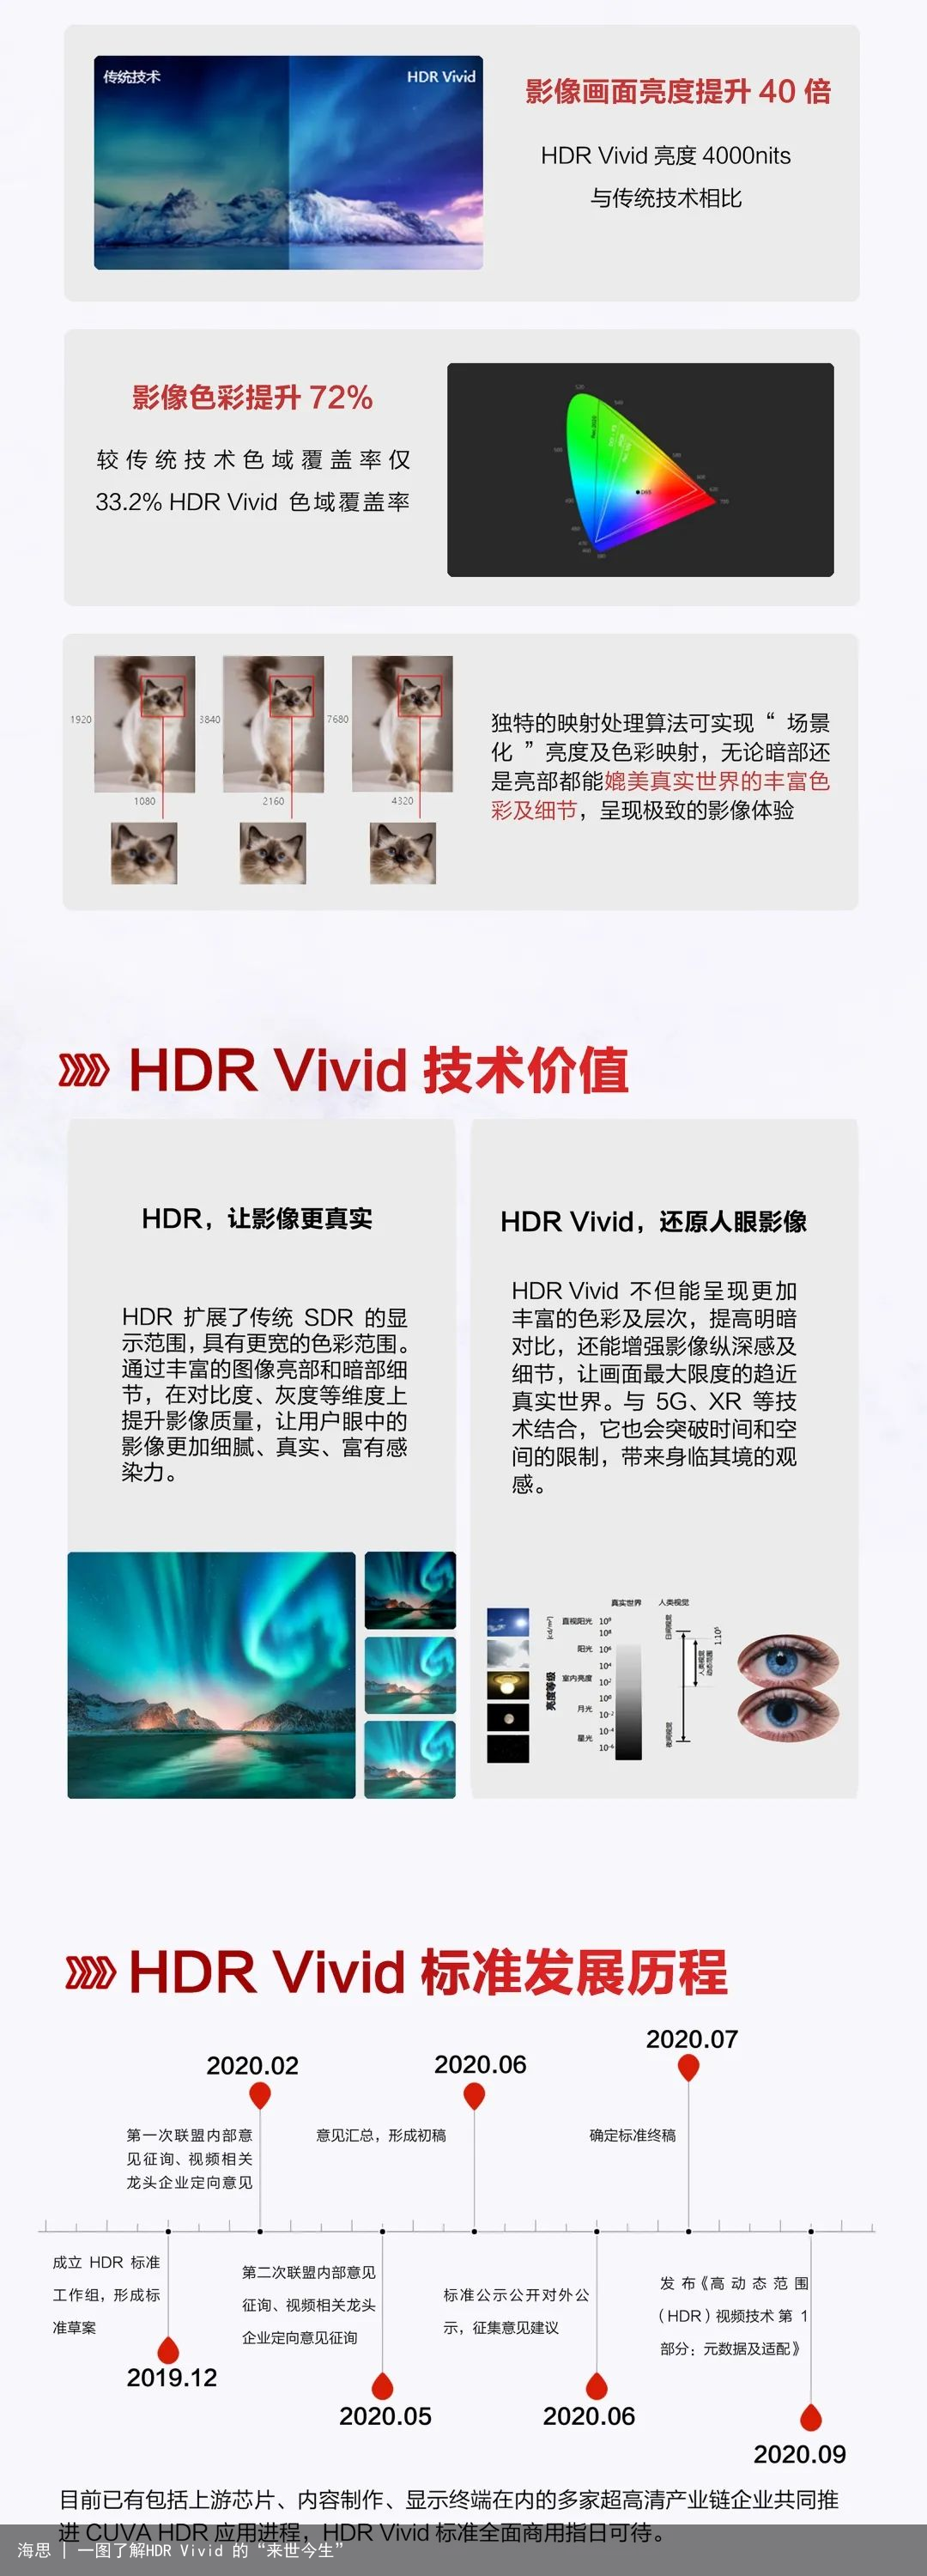 海思 | 一图了解HDR Vivid 的“来世今生”2